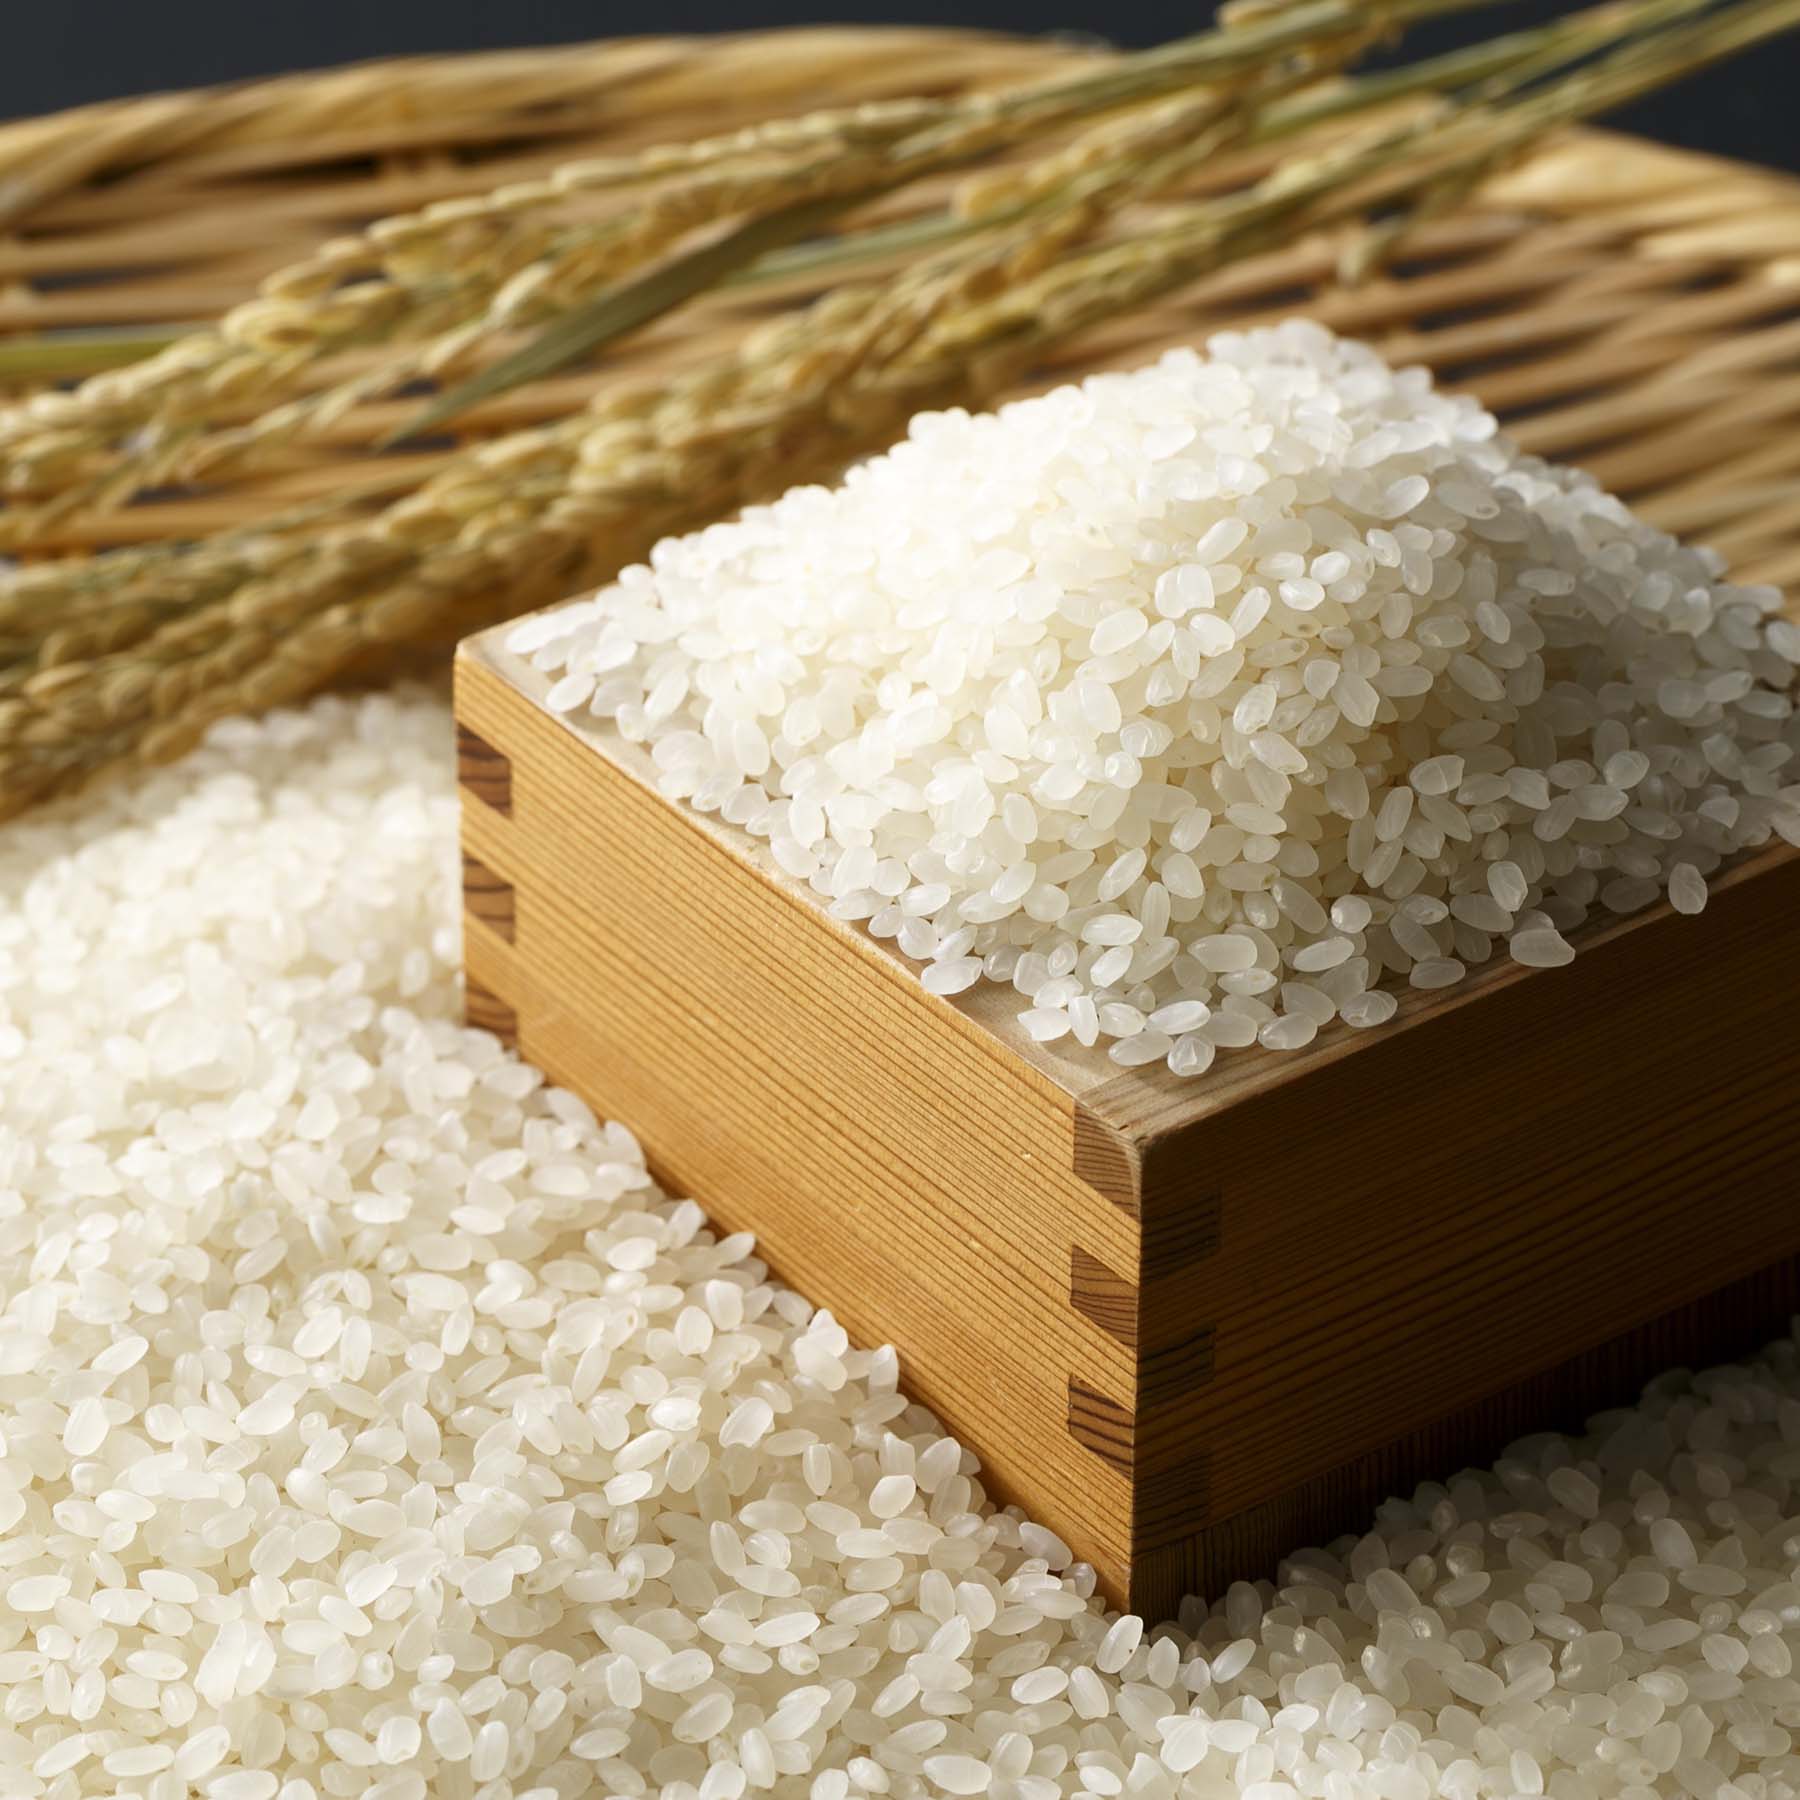 こだわり特別栽培米セットB 5kg×2袋 定期便9回